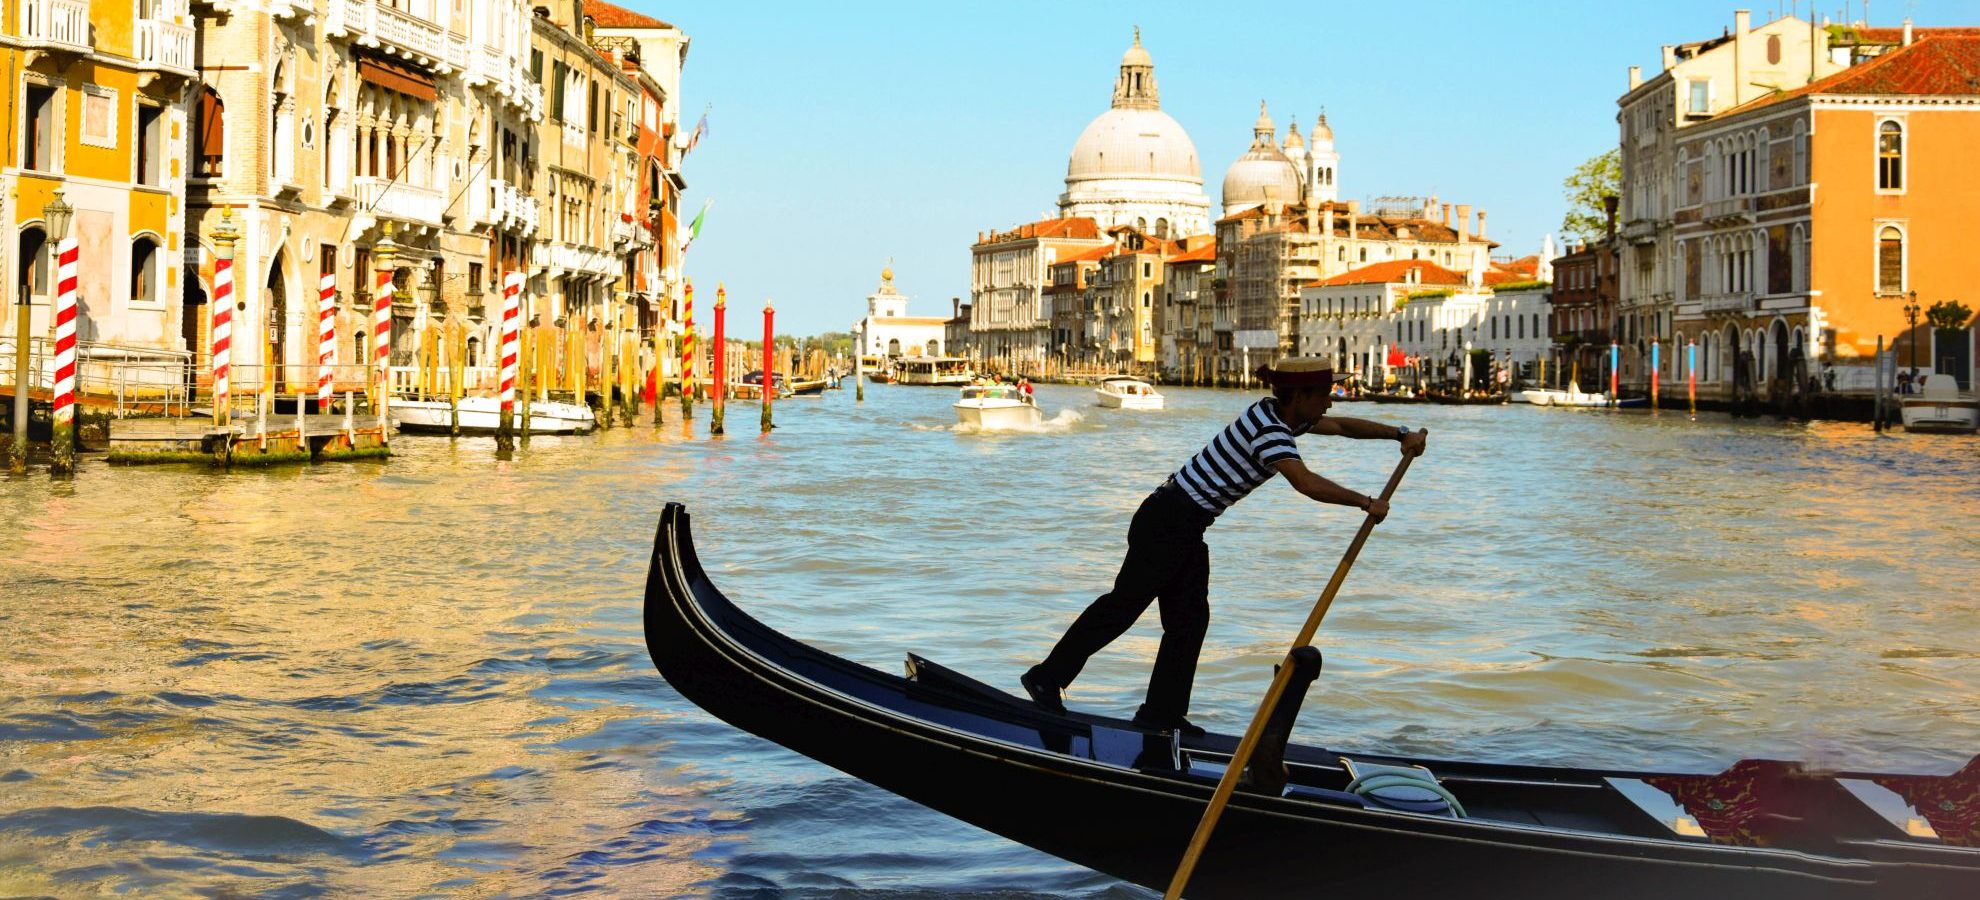 Veneția deschide festivalul de film. Care sunt soluțiile găsite pentru restricțiile COVID